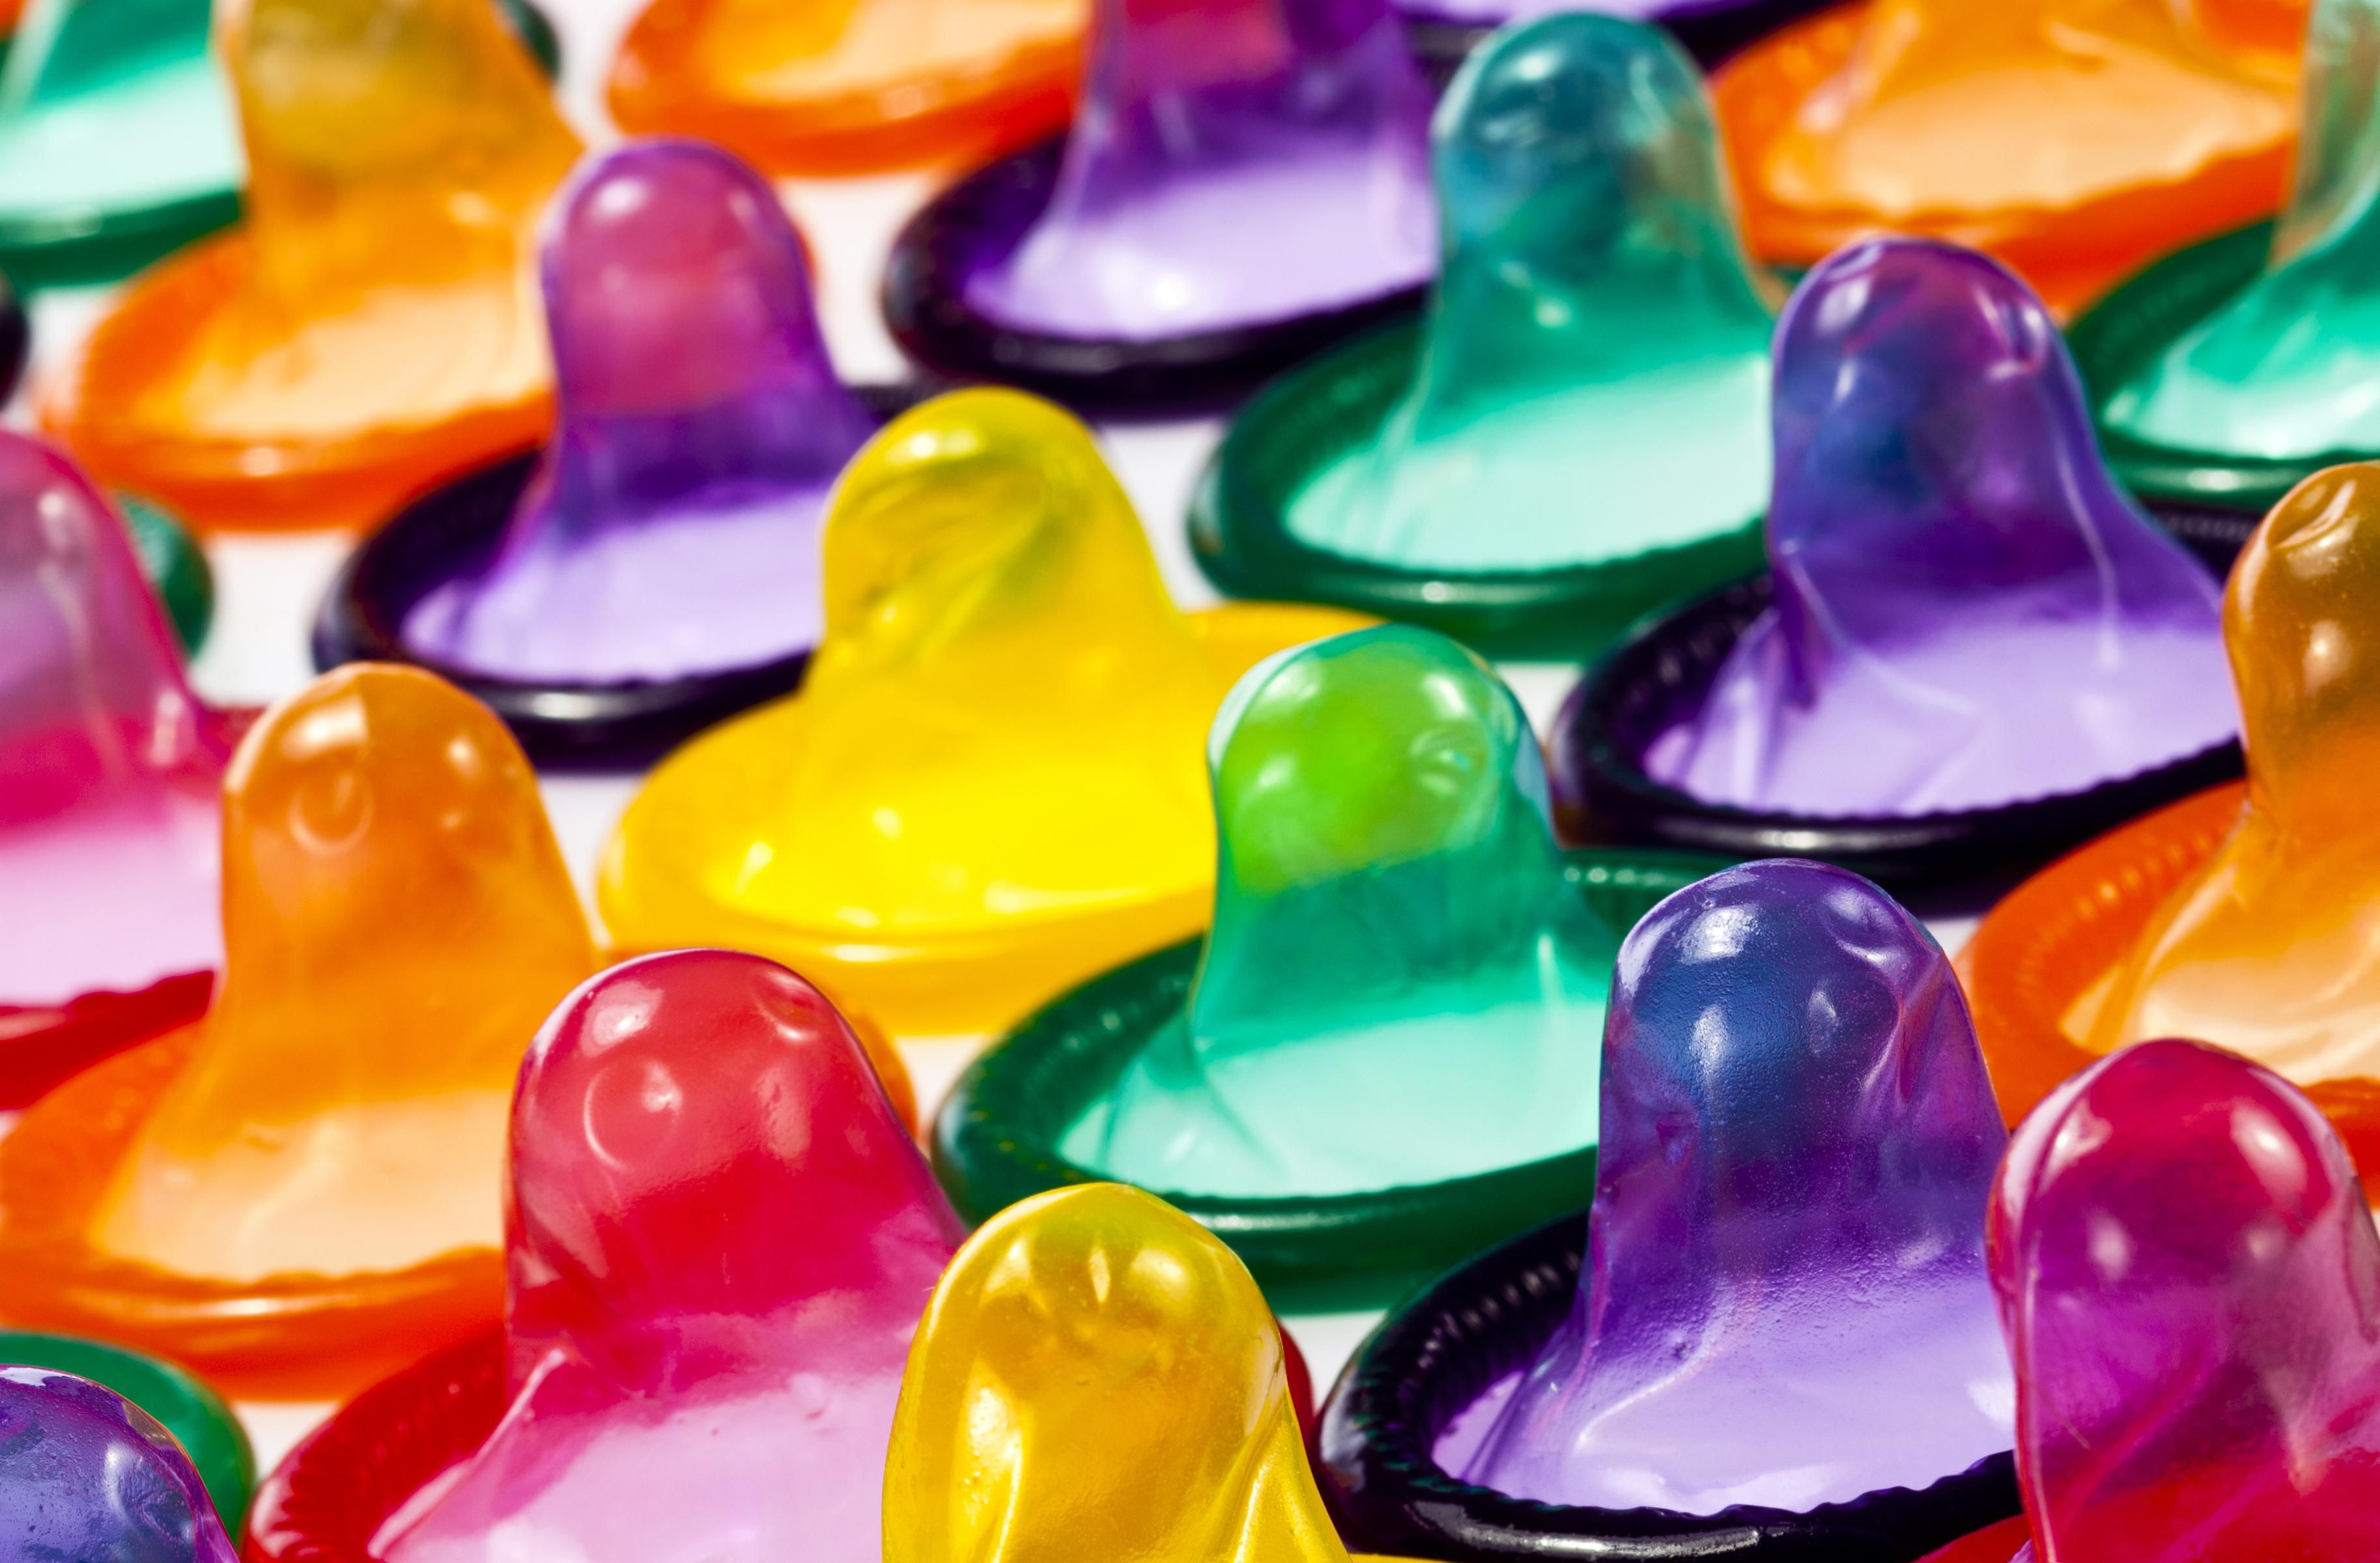 Arrangement of condoms in bright colors